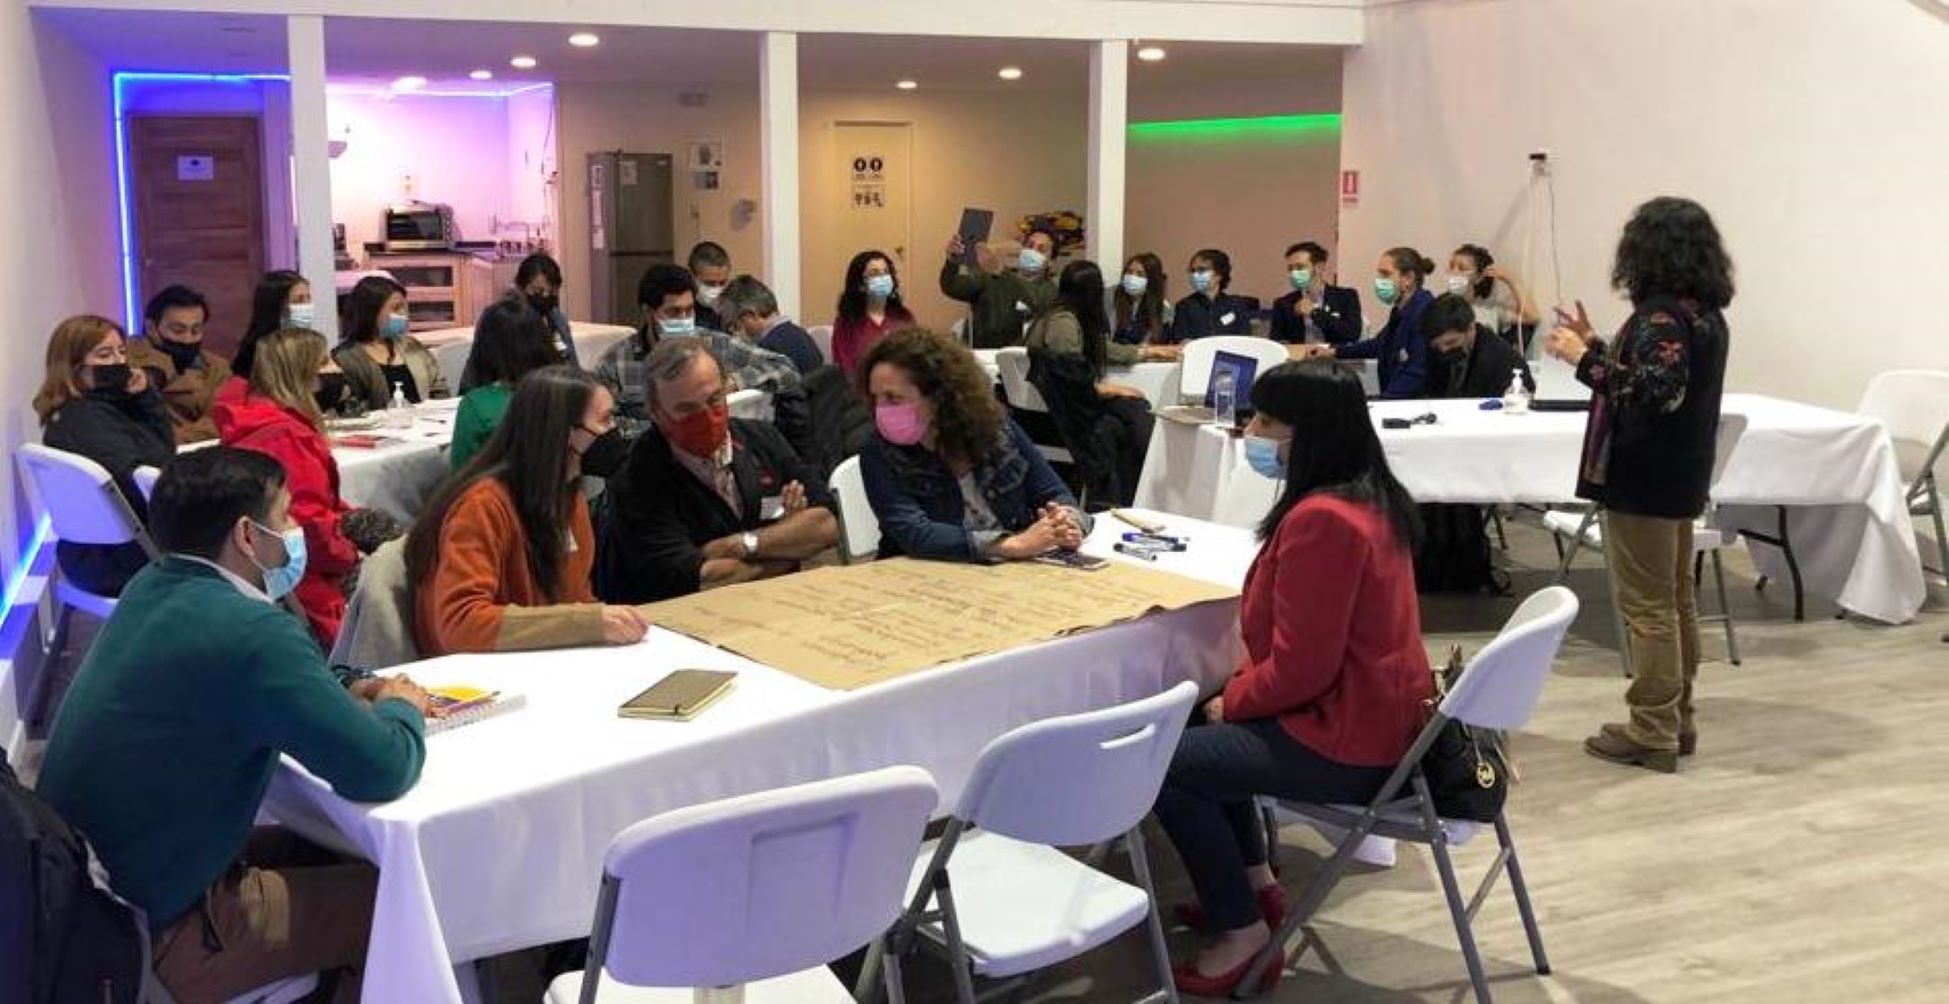 Continúa ejecutándose el PLADETUR de Punta Arenas, con actividades participativas